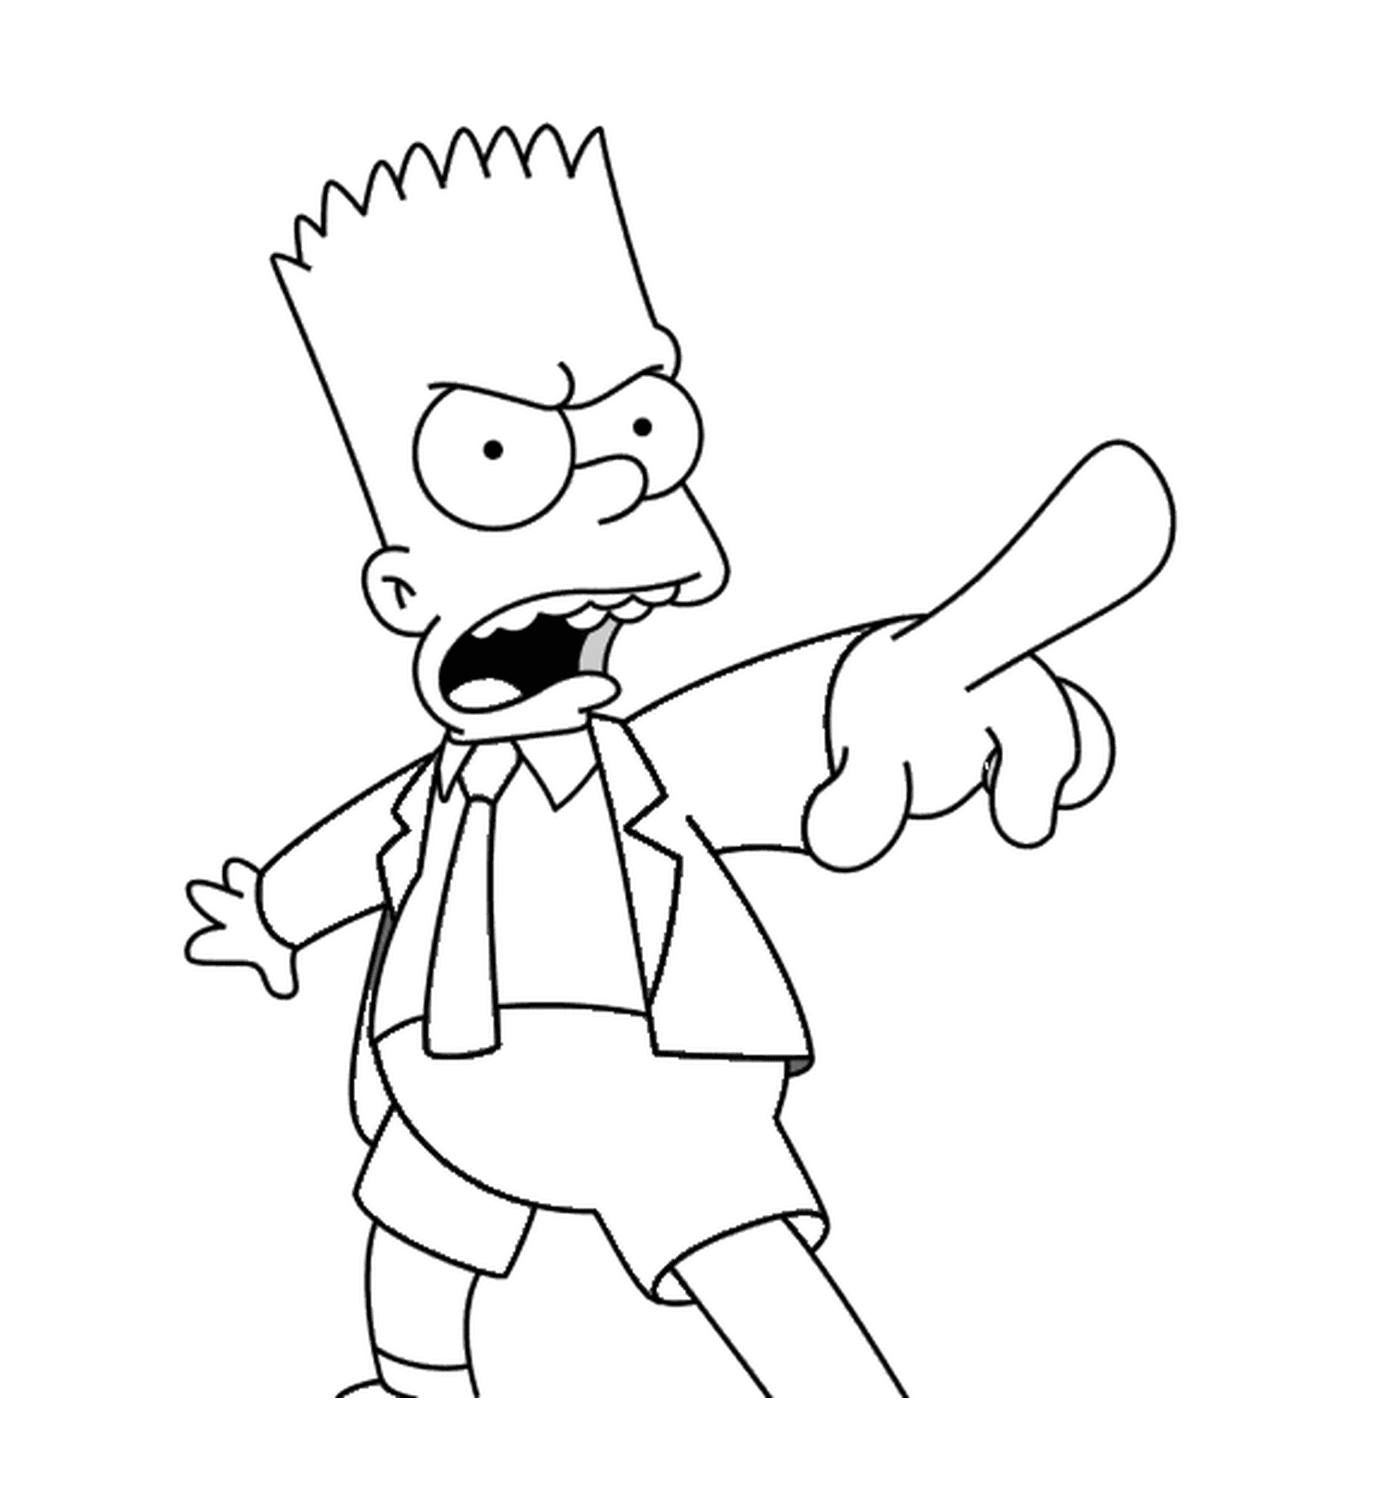  Bart e' arrabbiato con una cravatta 